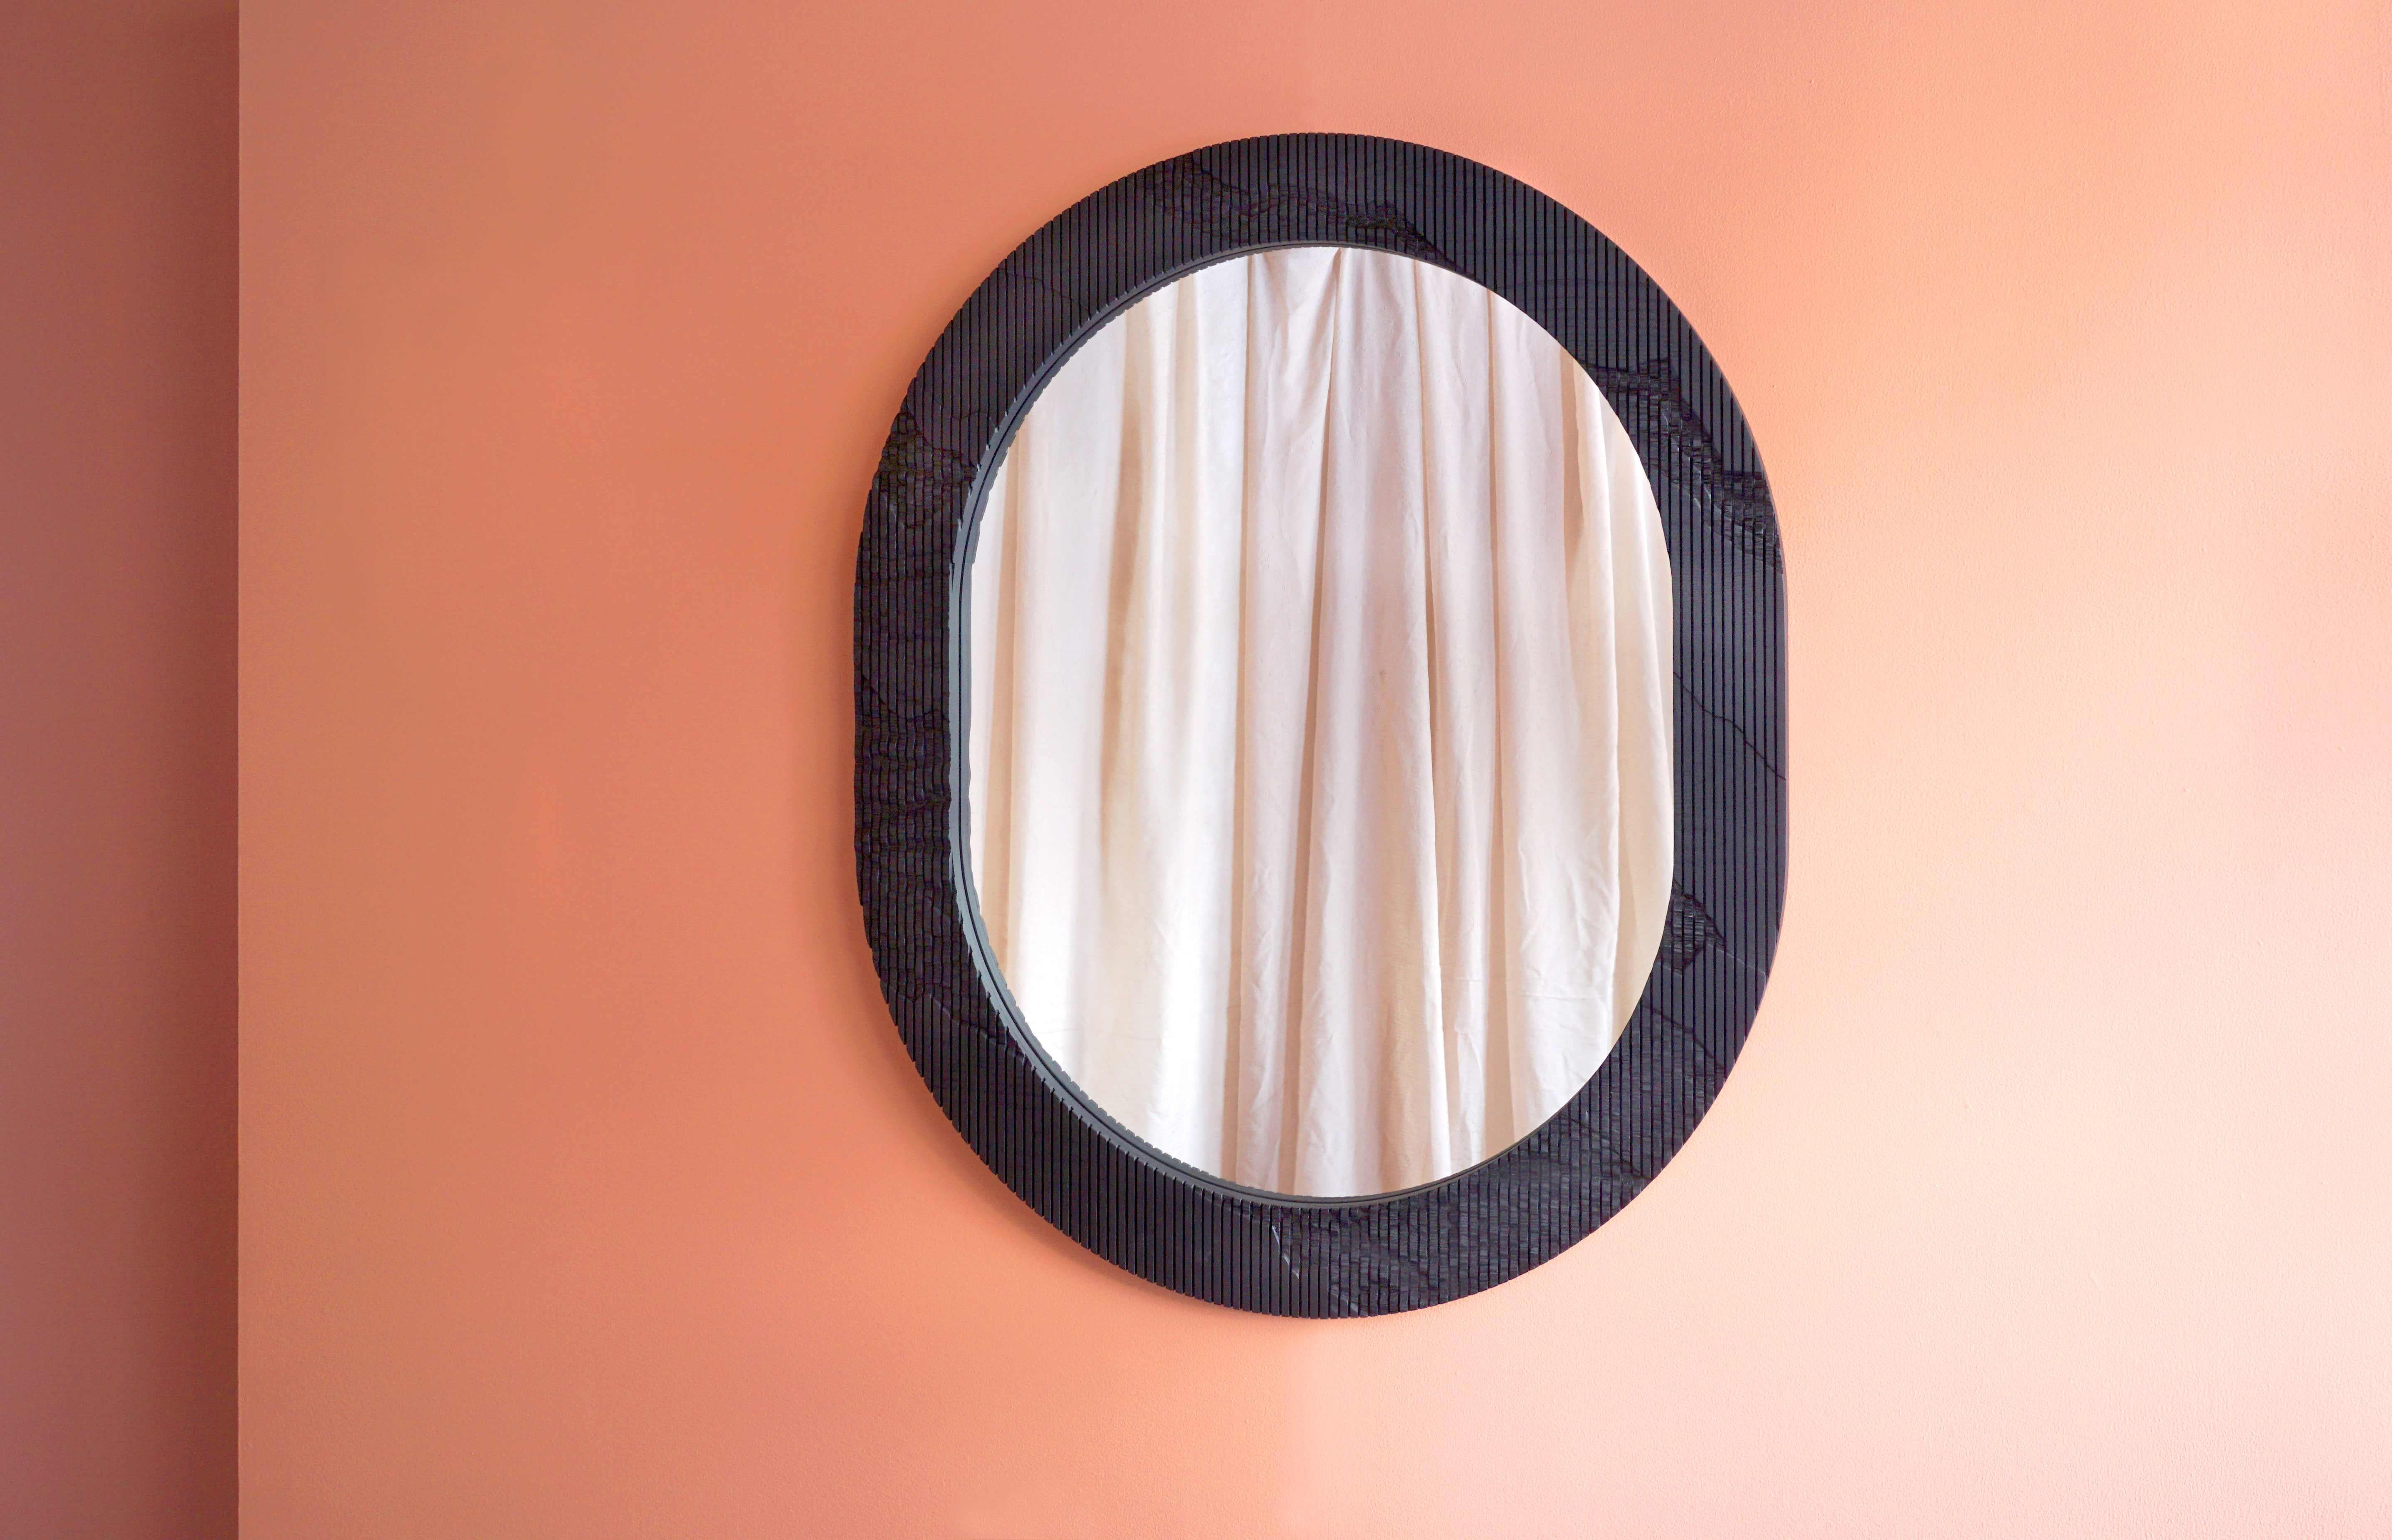 En apportant la sérénité de l'extérieur dans la maison, le miroir Shale a une texture distincte sculptée sur la surface du cadre qui semble aller au-delà de ses limites. La surface en frêne massif est rayée verticalement dans le sens du grain, et le